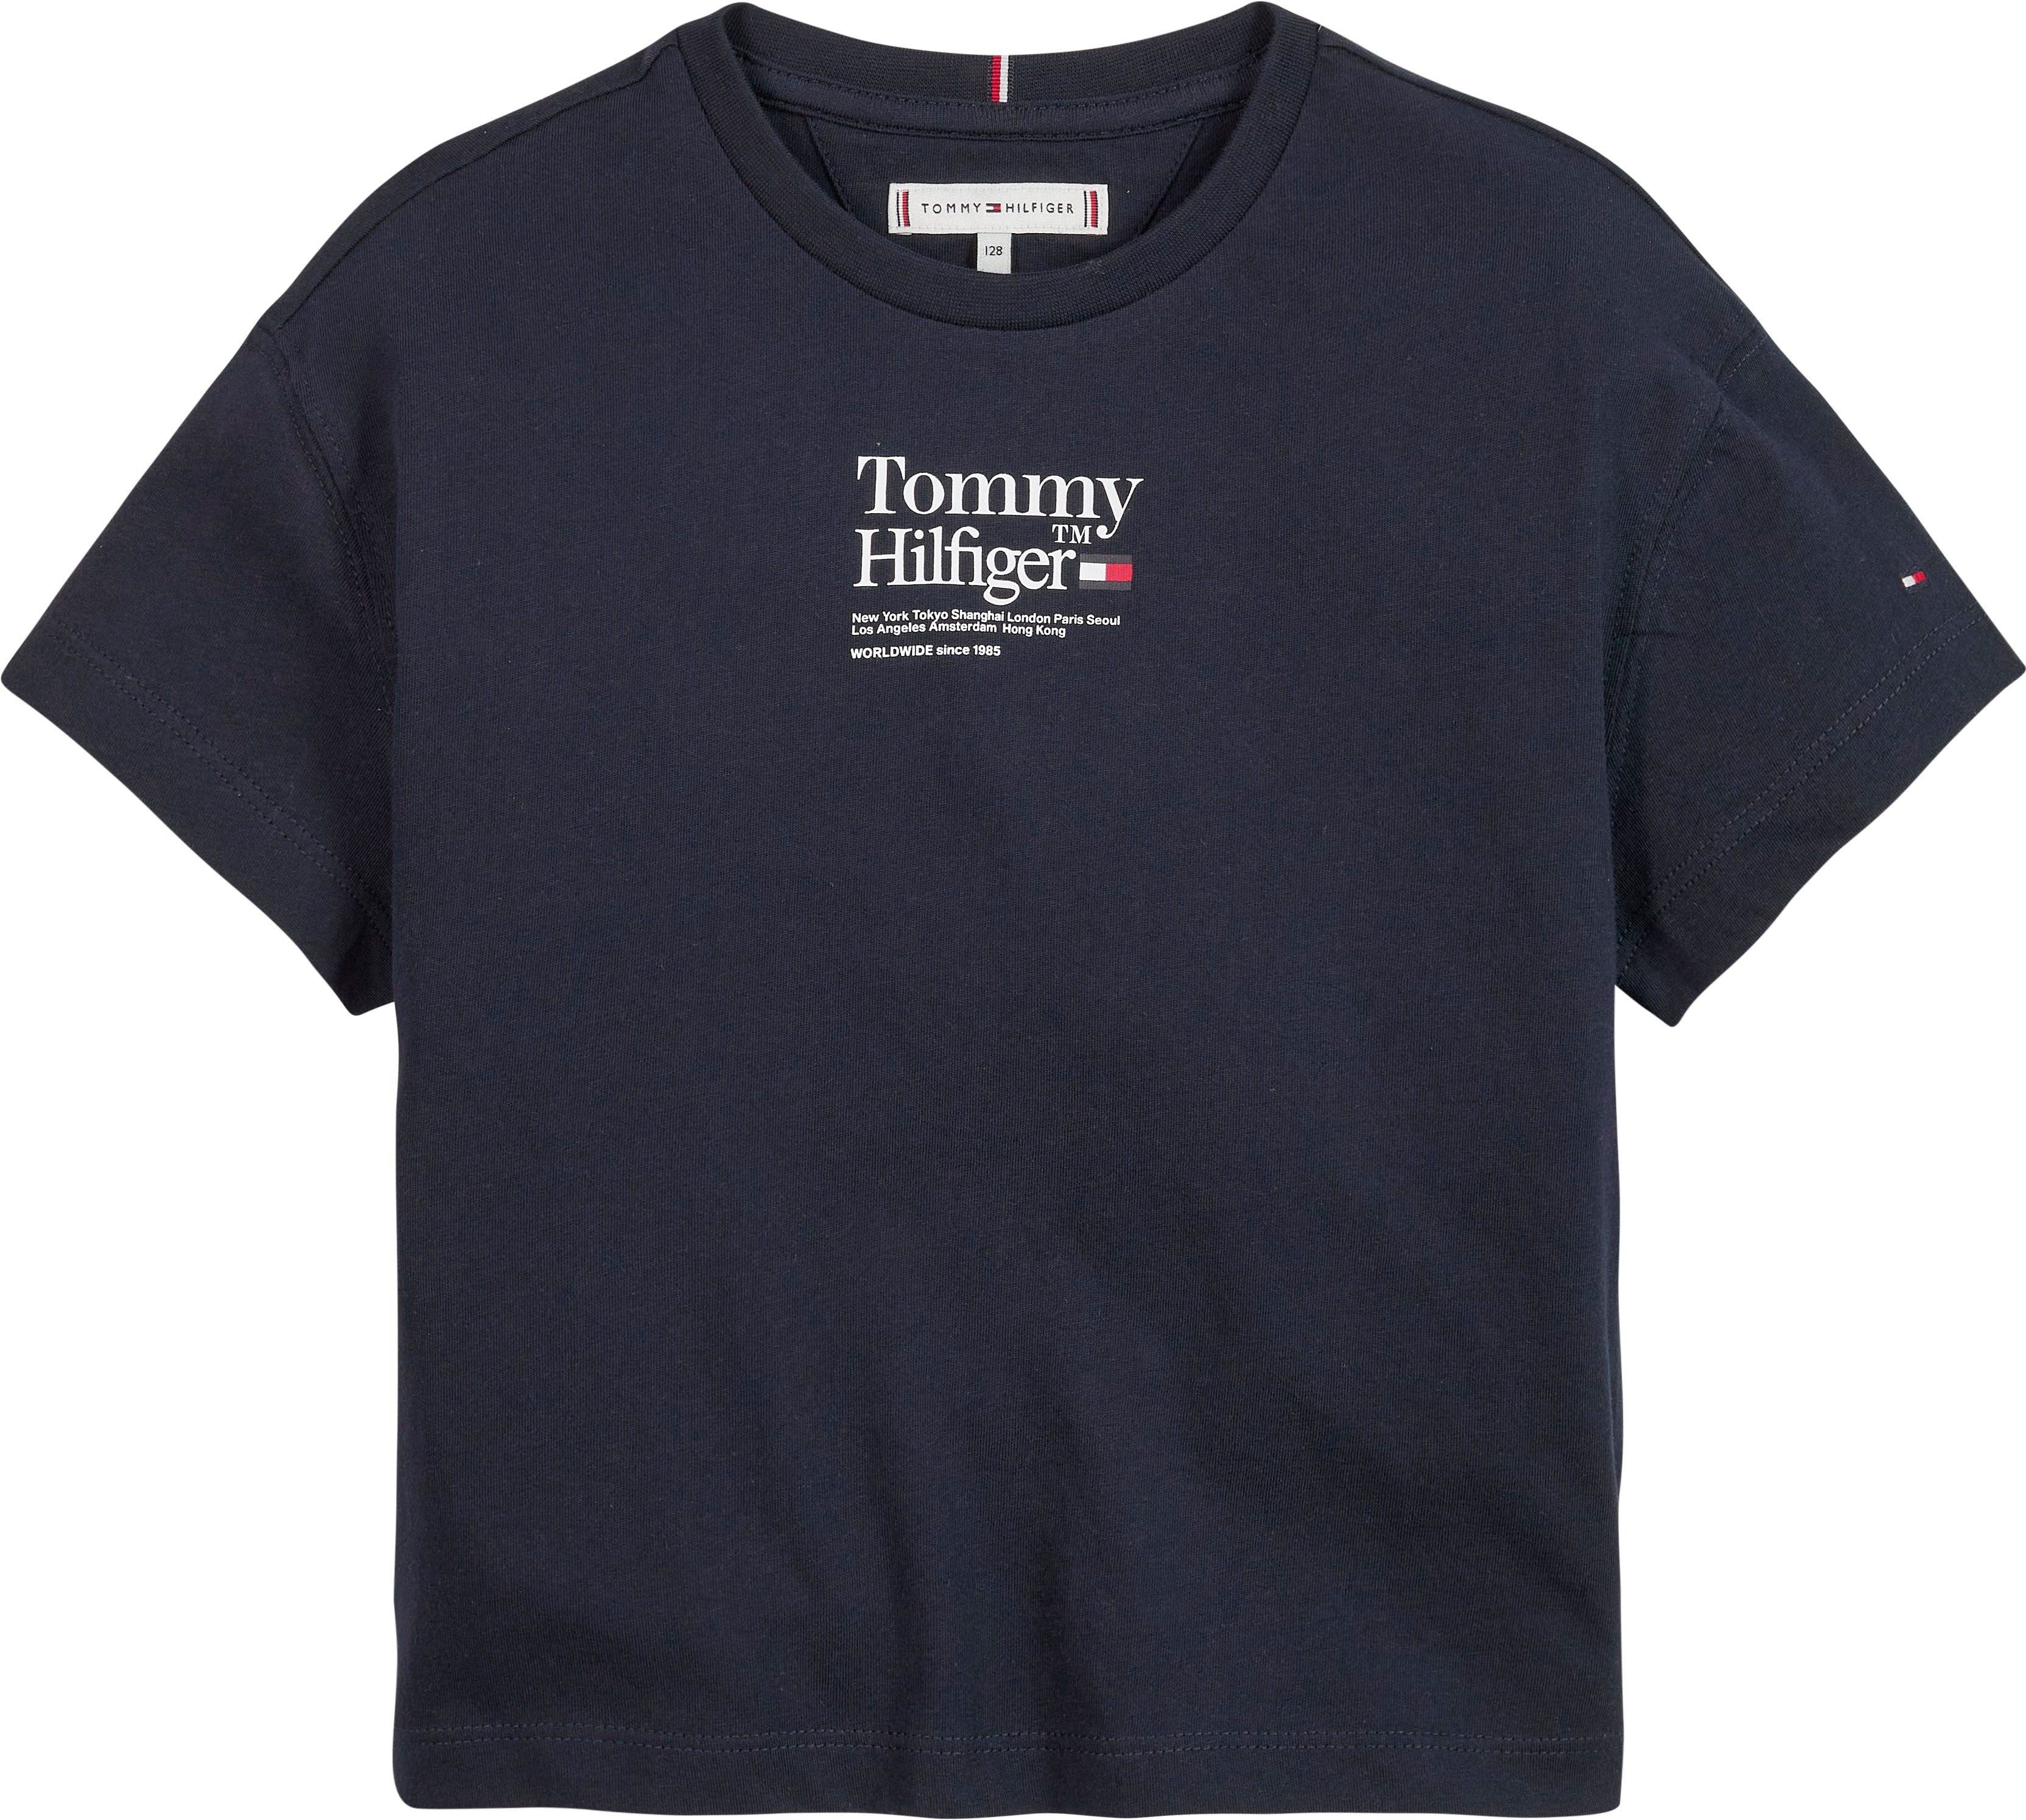 TIMELESS TEE kurzen mit S/S TOMMY Tommy Hilfiger Ärmeln T-Shirt